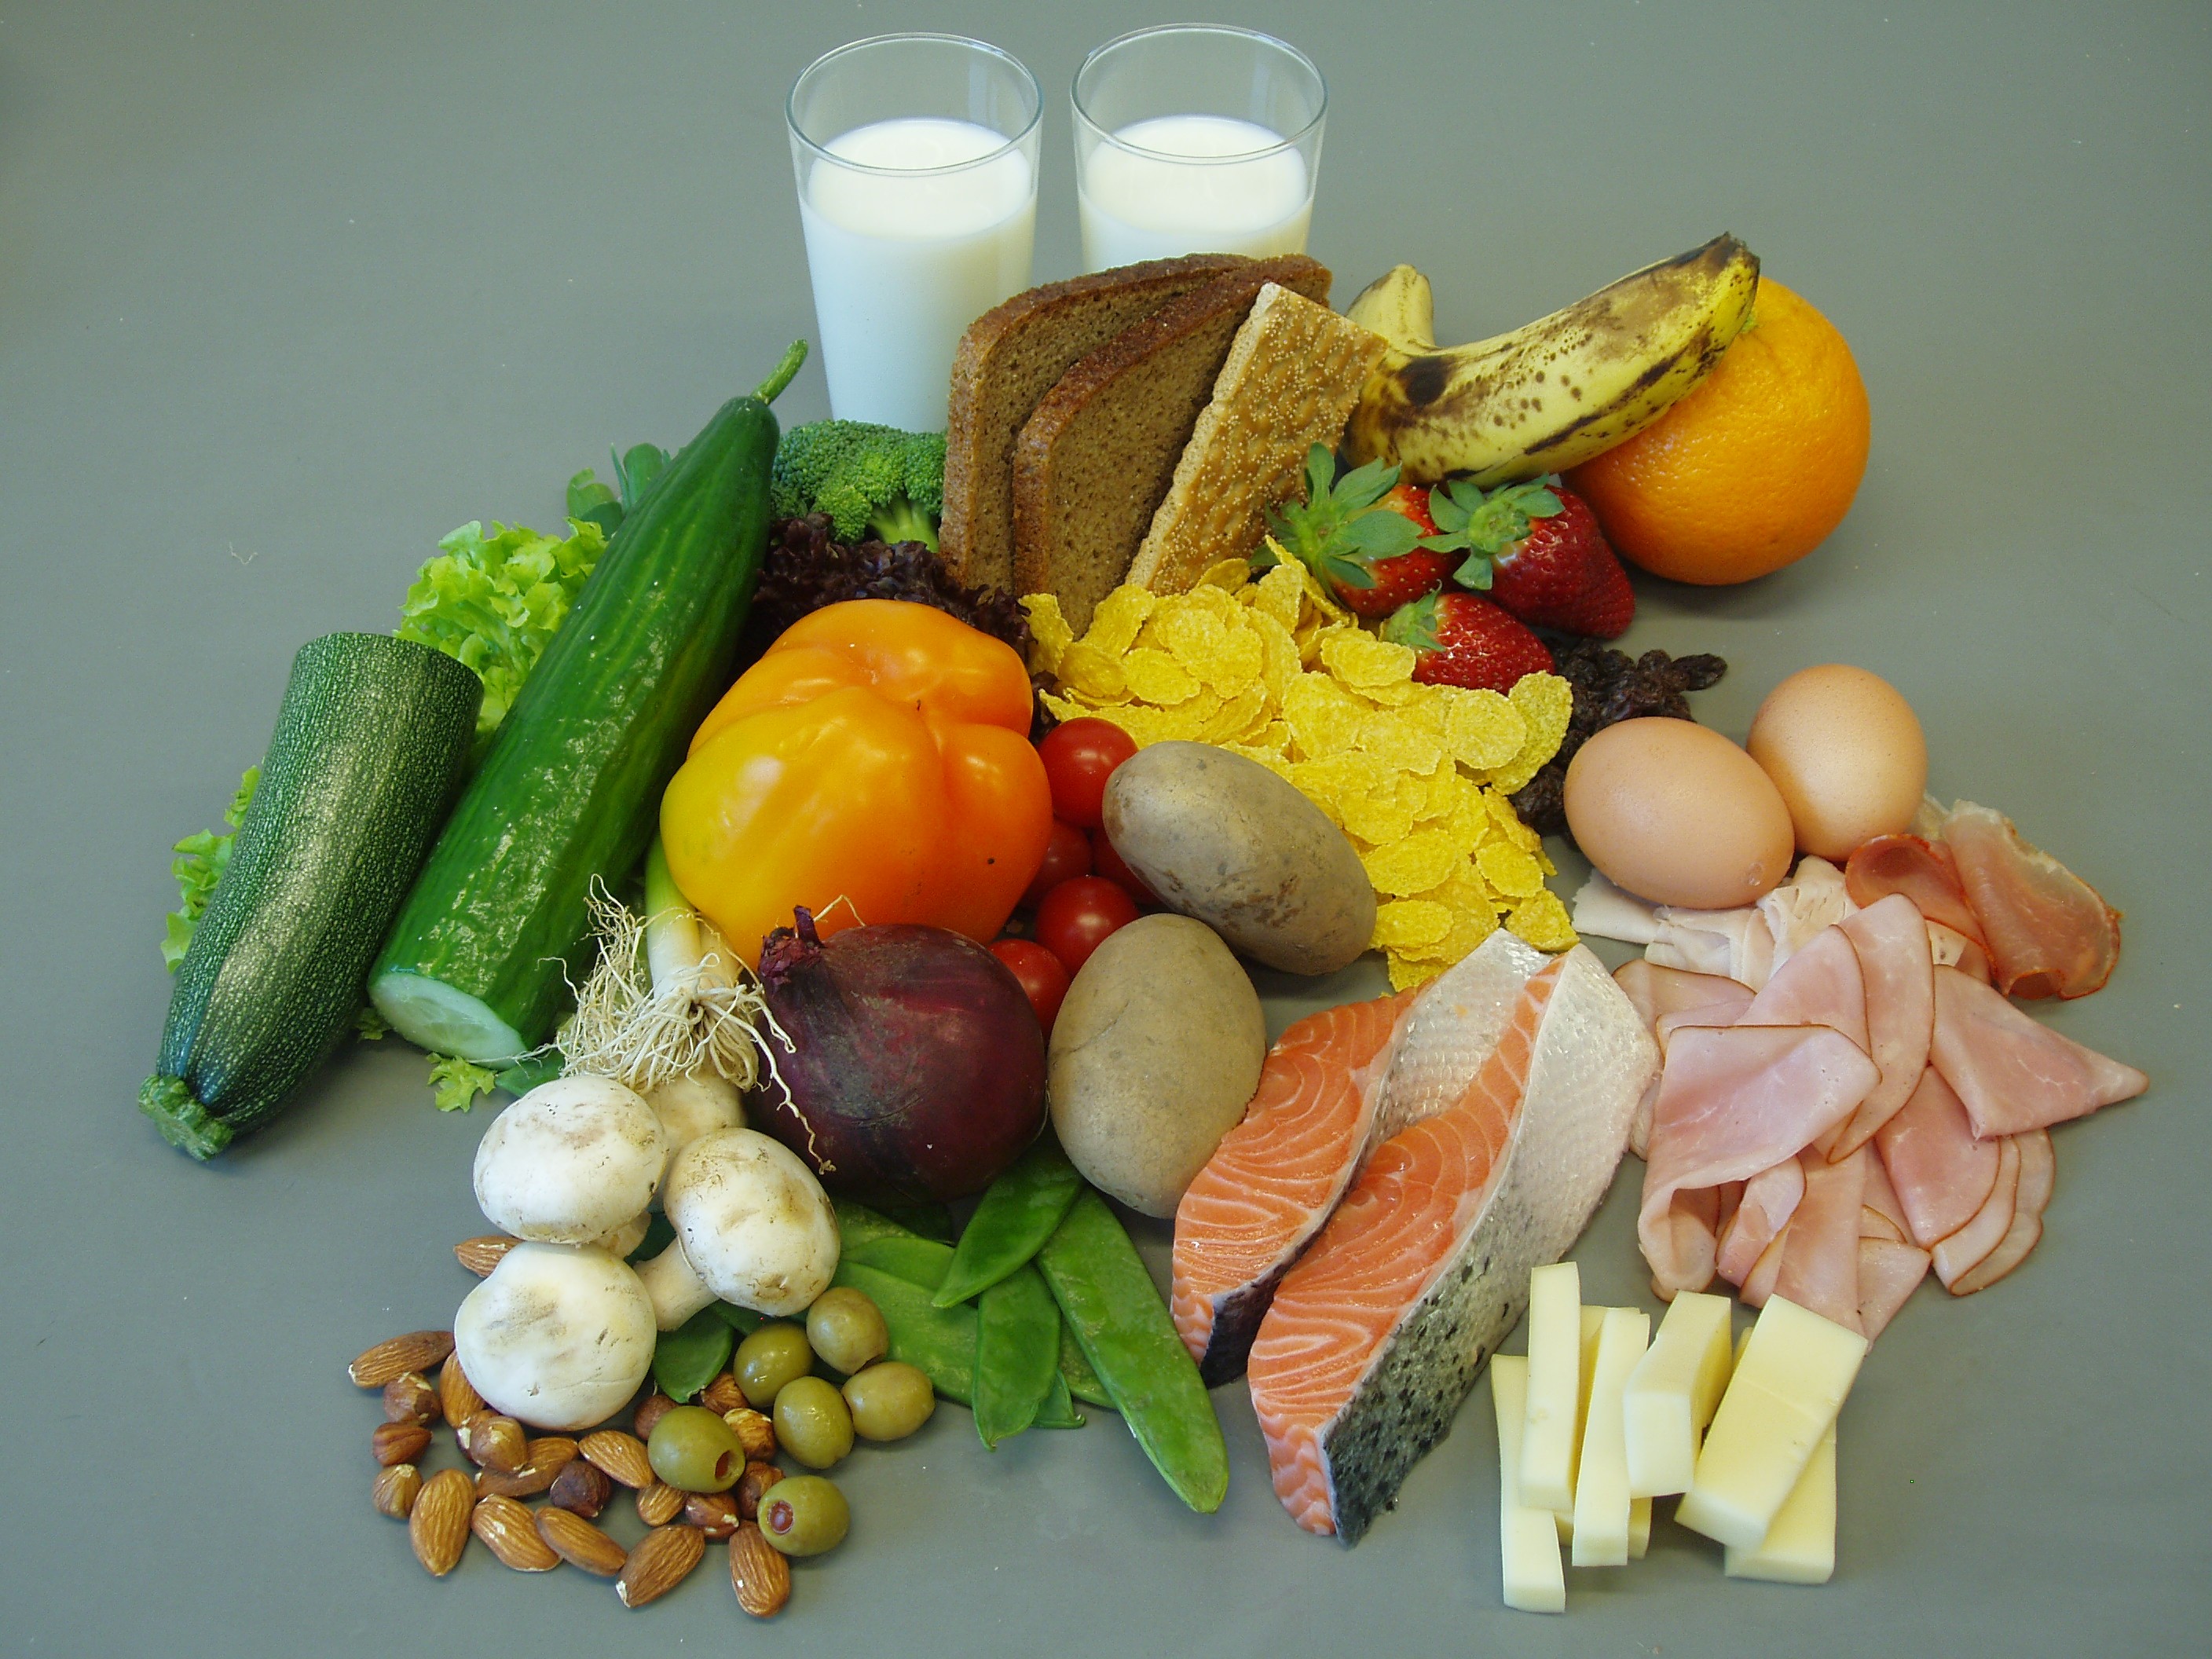 Еда для похудения продукты. Правильное питание. Полезное питание. Диетические продукты. Белковая пища и овощи.